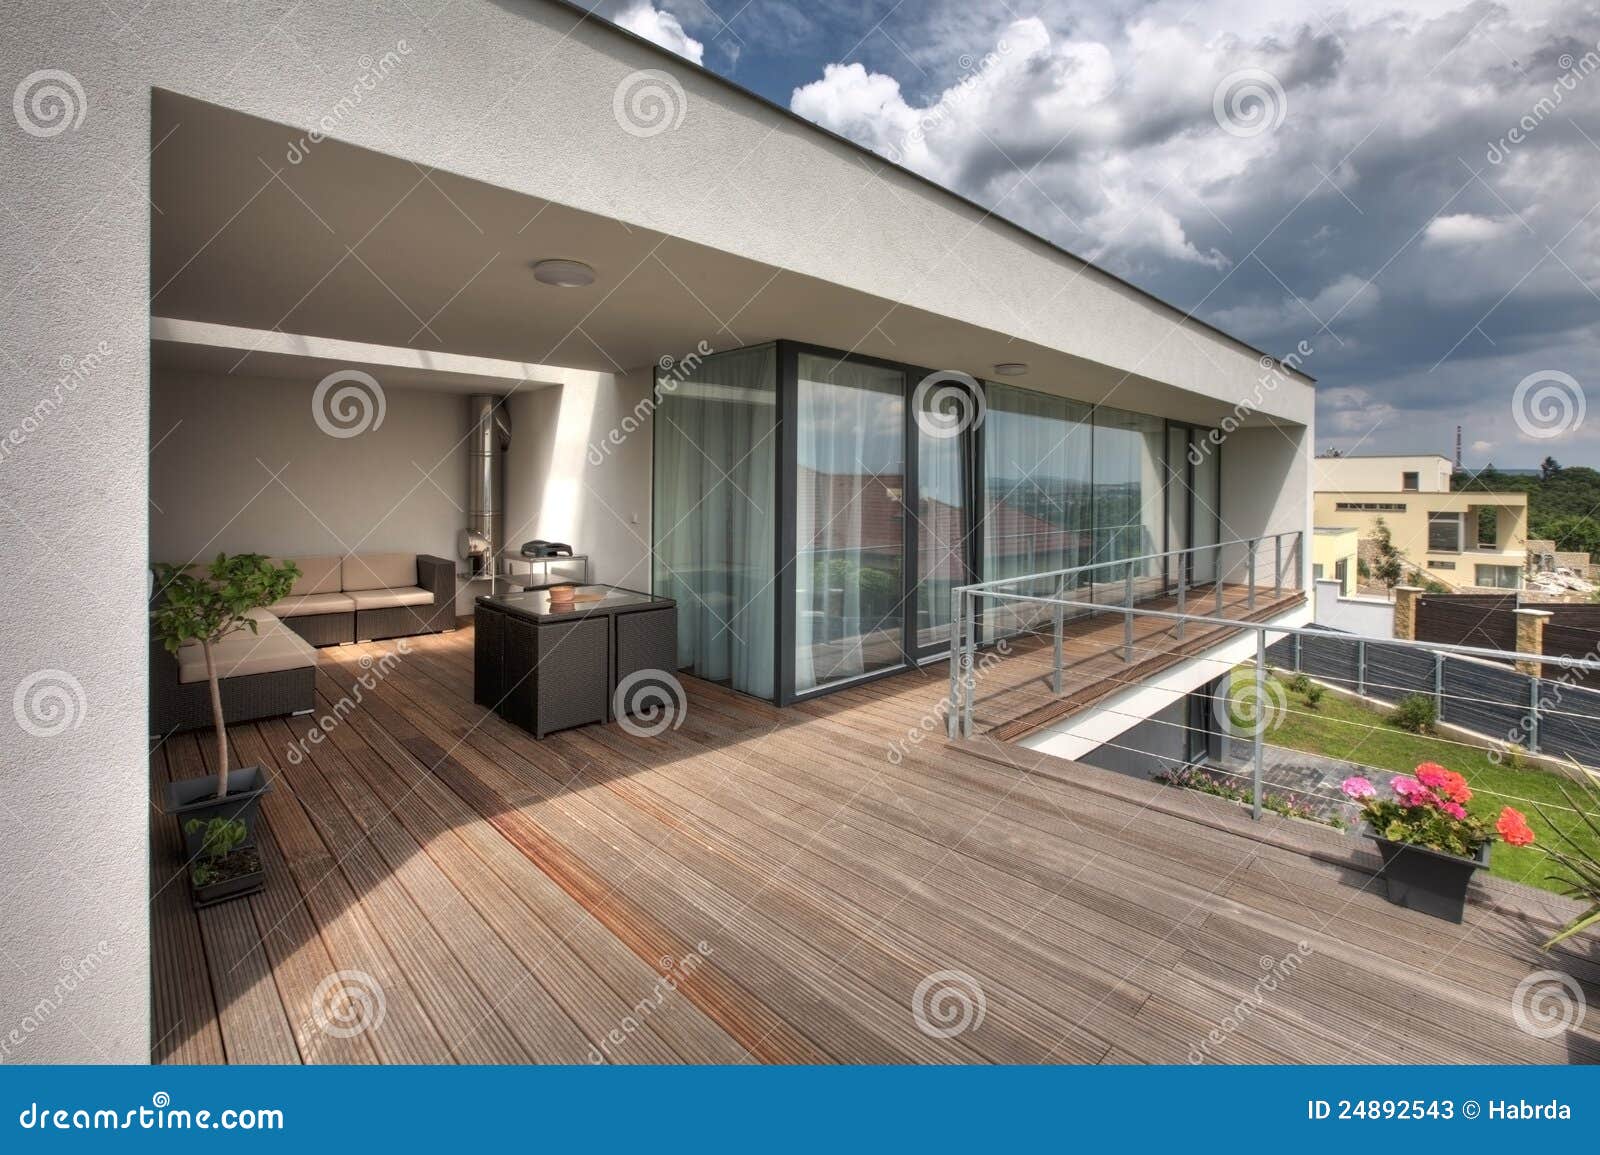 modern home terrace